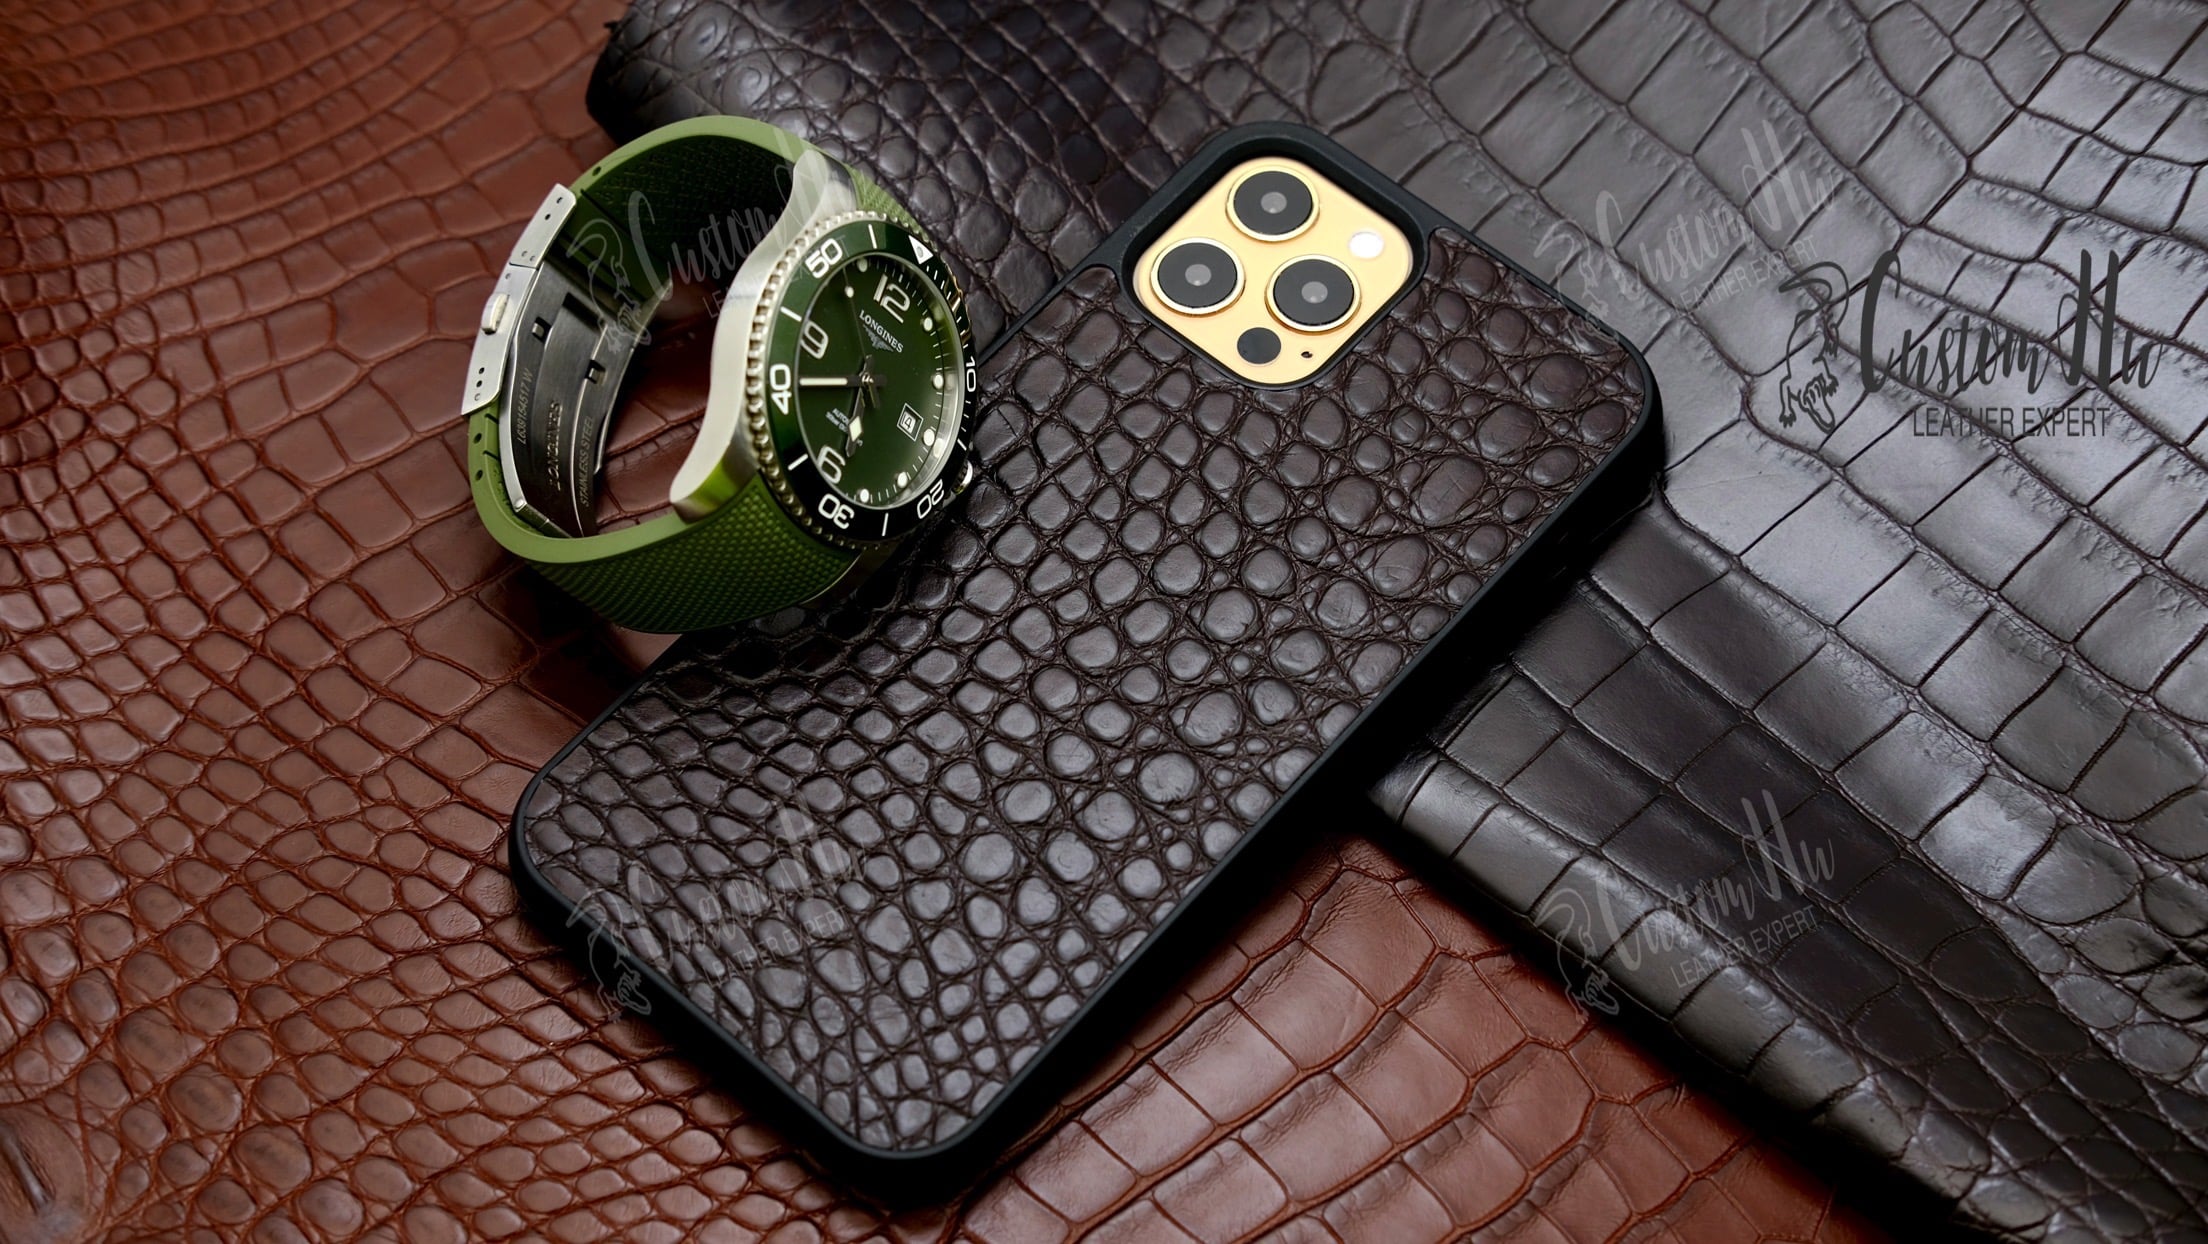 Exquisites Uhrenarmband. Luxuriöse Schutzhülle aus echtem Krokodilleder, kompatibel mit iPhone 12 Pro und iPhone 12